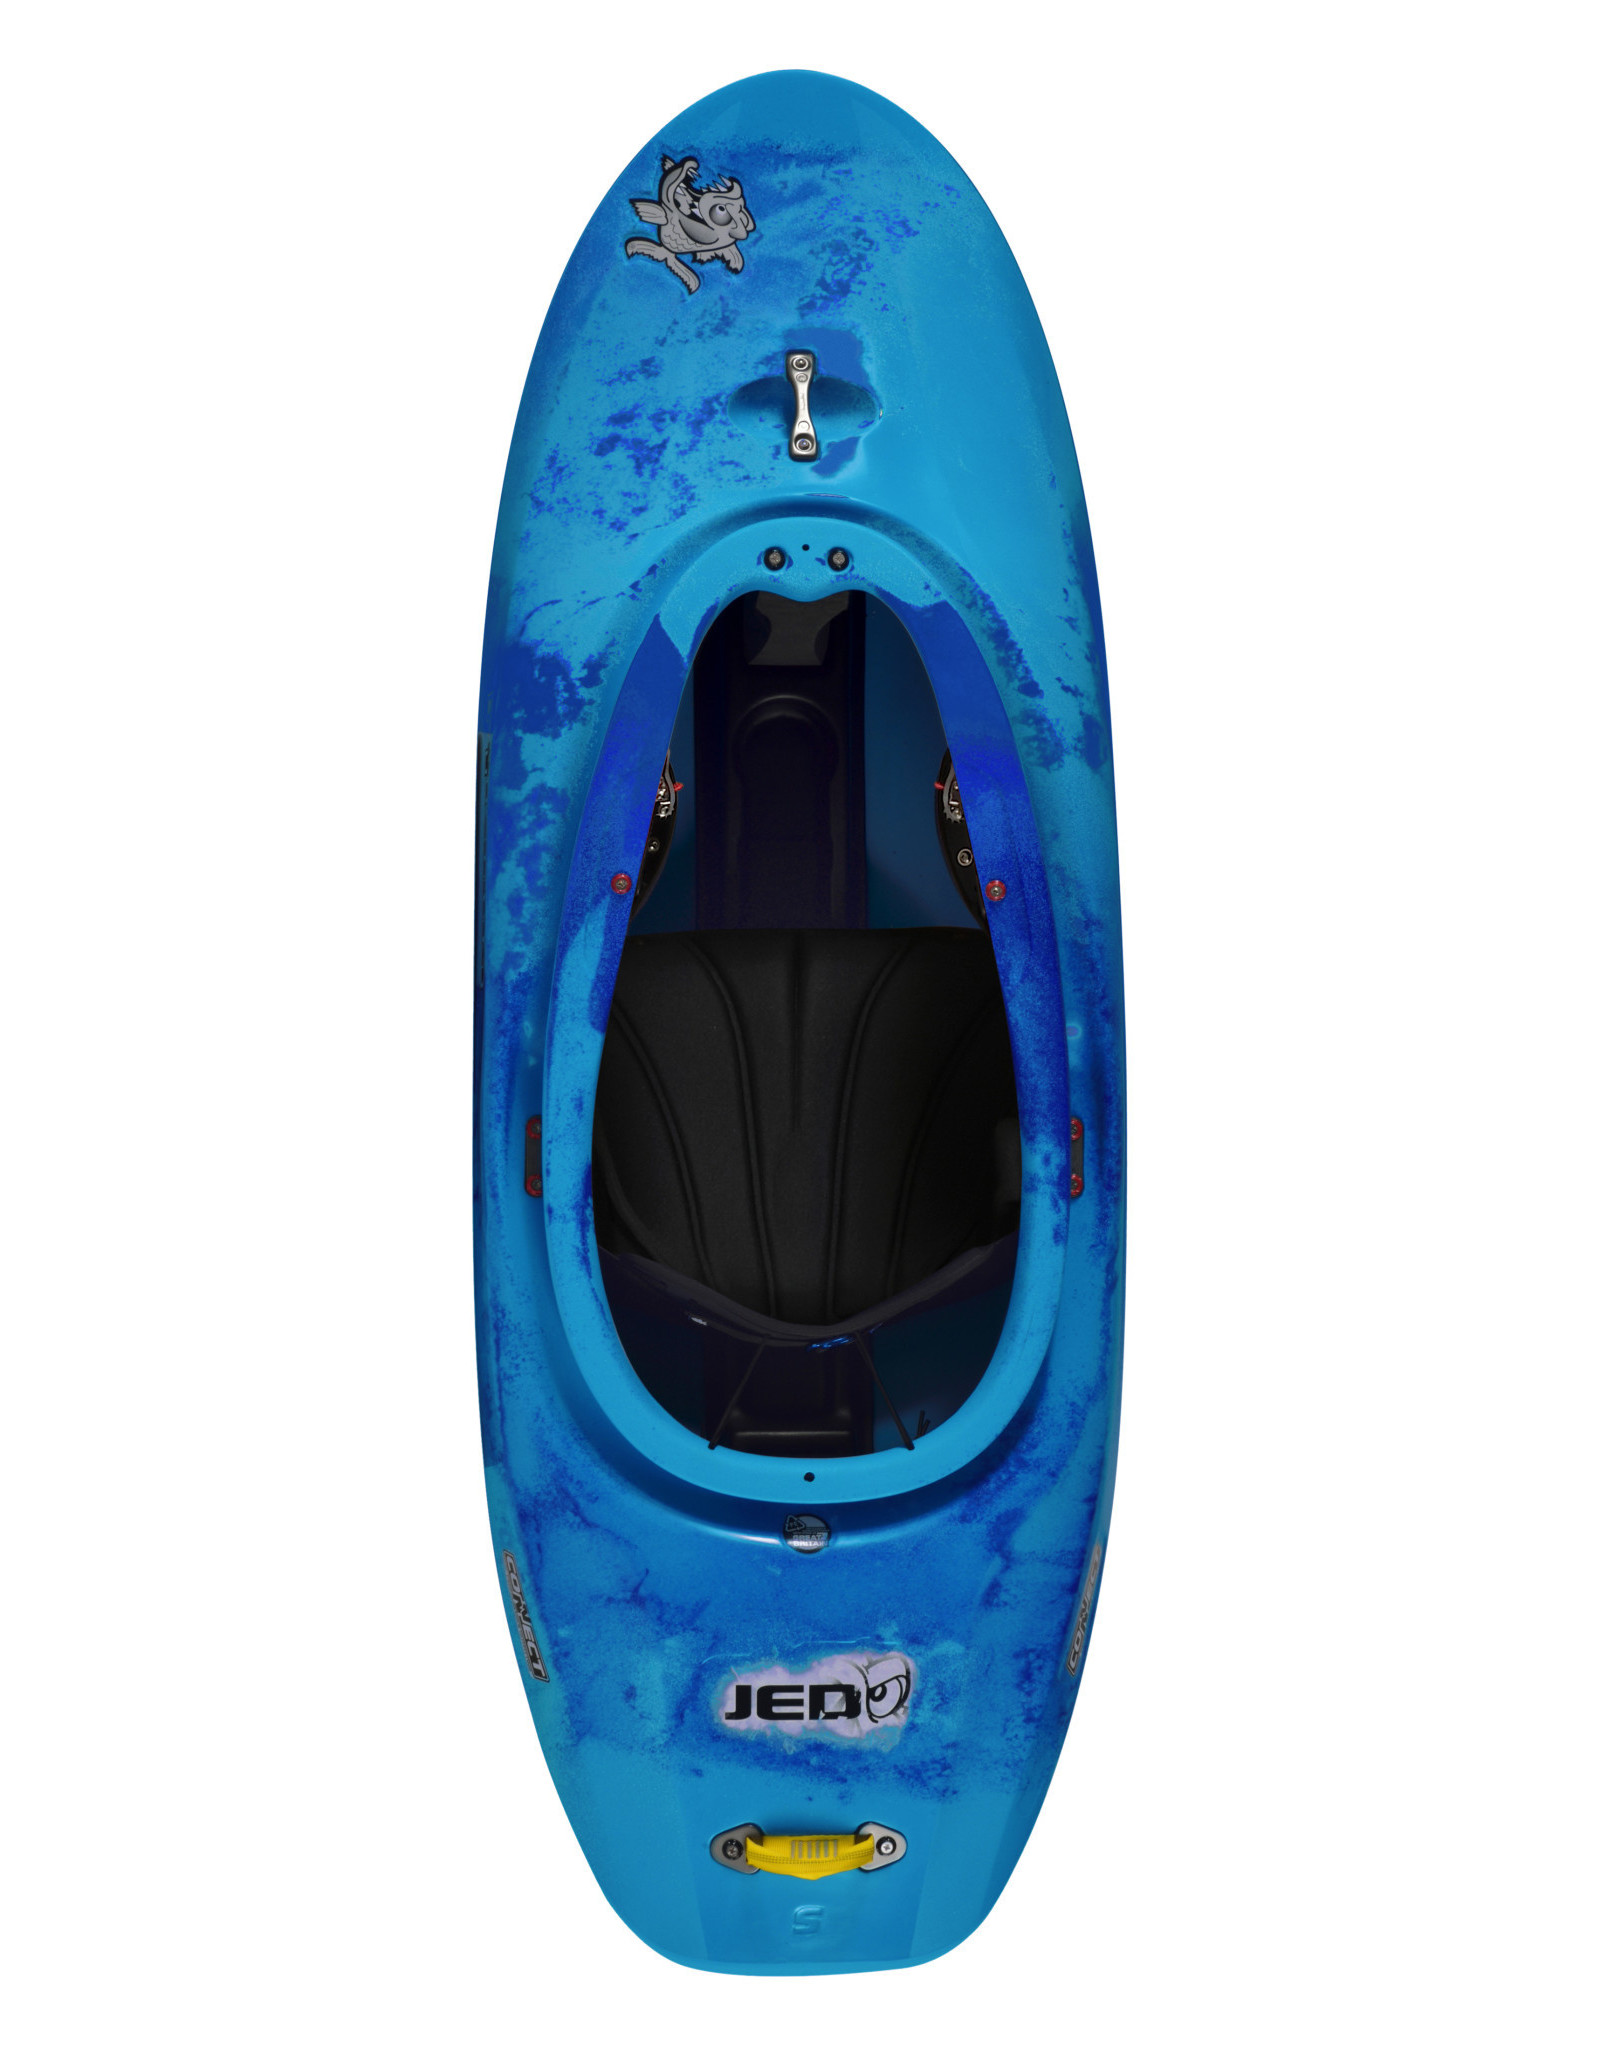 Pyranha Pyranha kayak Jed Stout (2021)